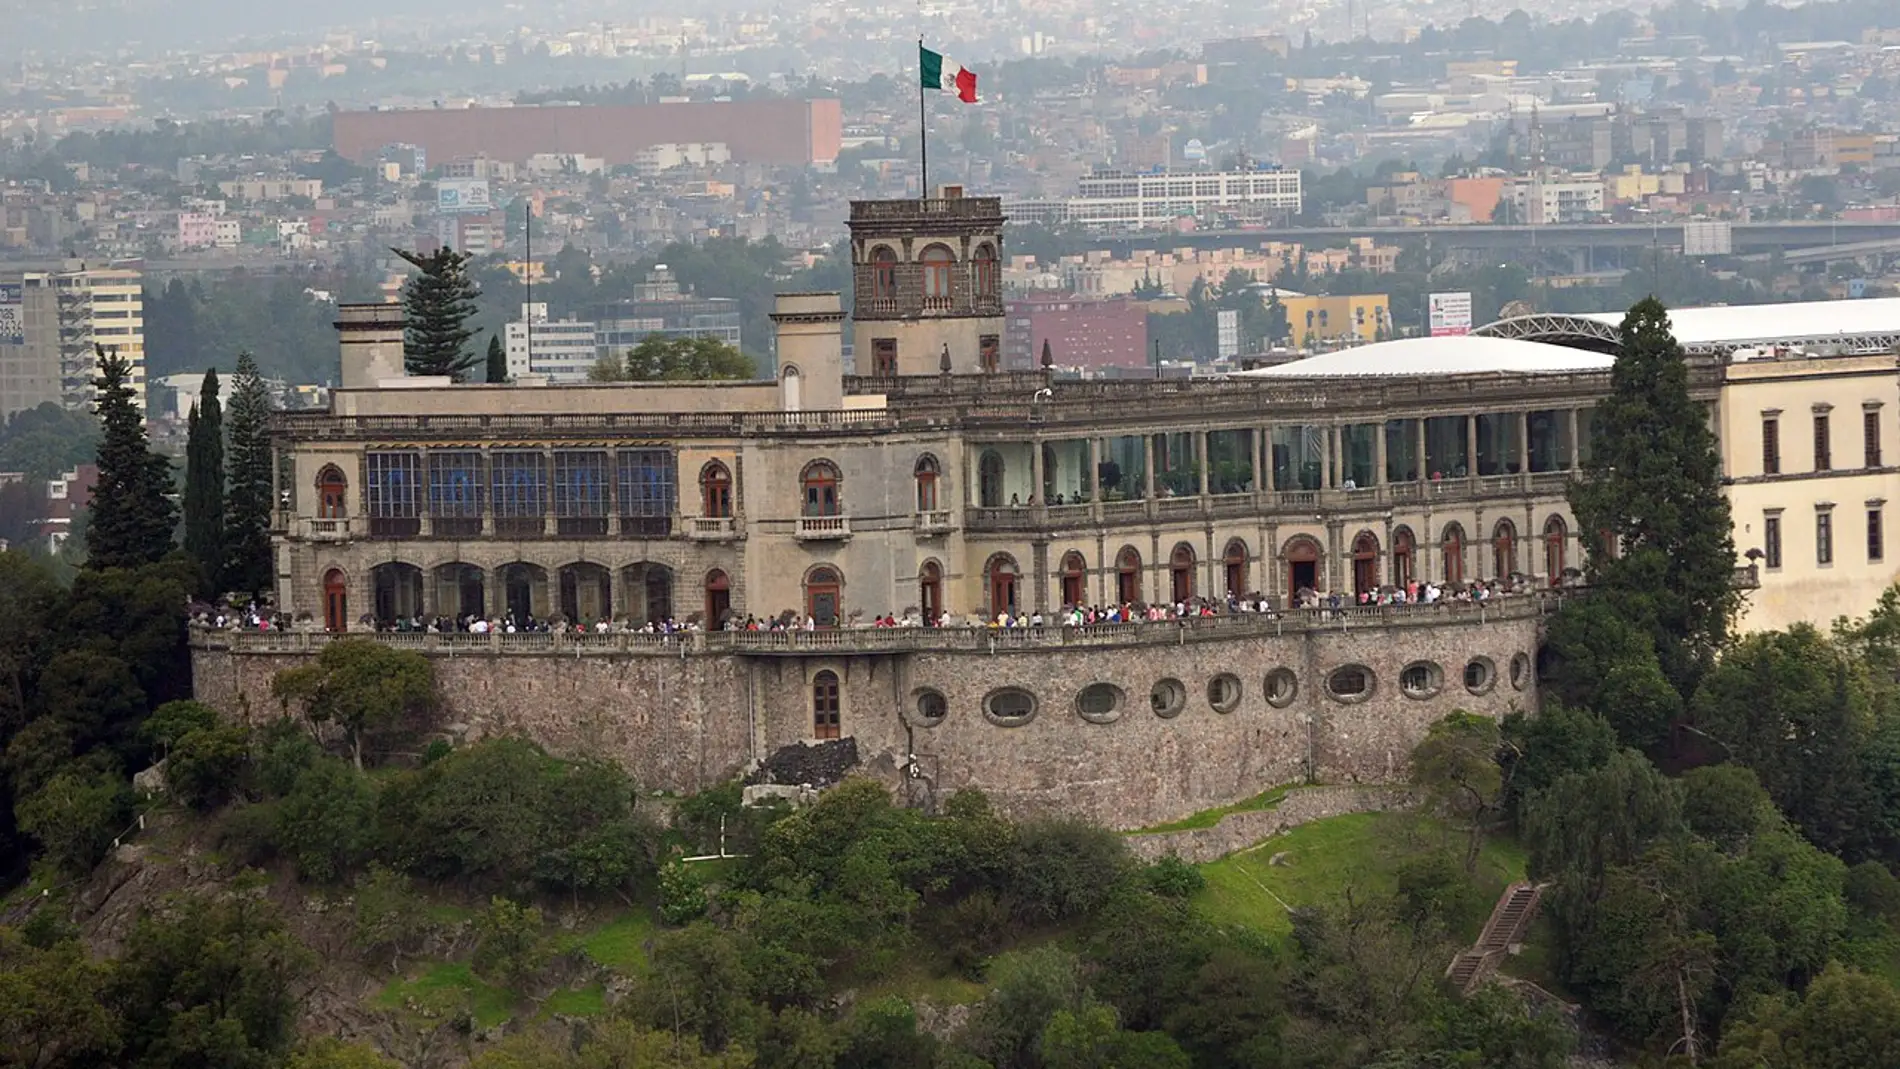 Castillo de Chapultepec: su curiosa historia, su evolución y dónde podemos encontrarlo